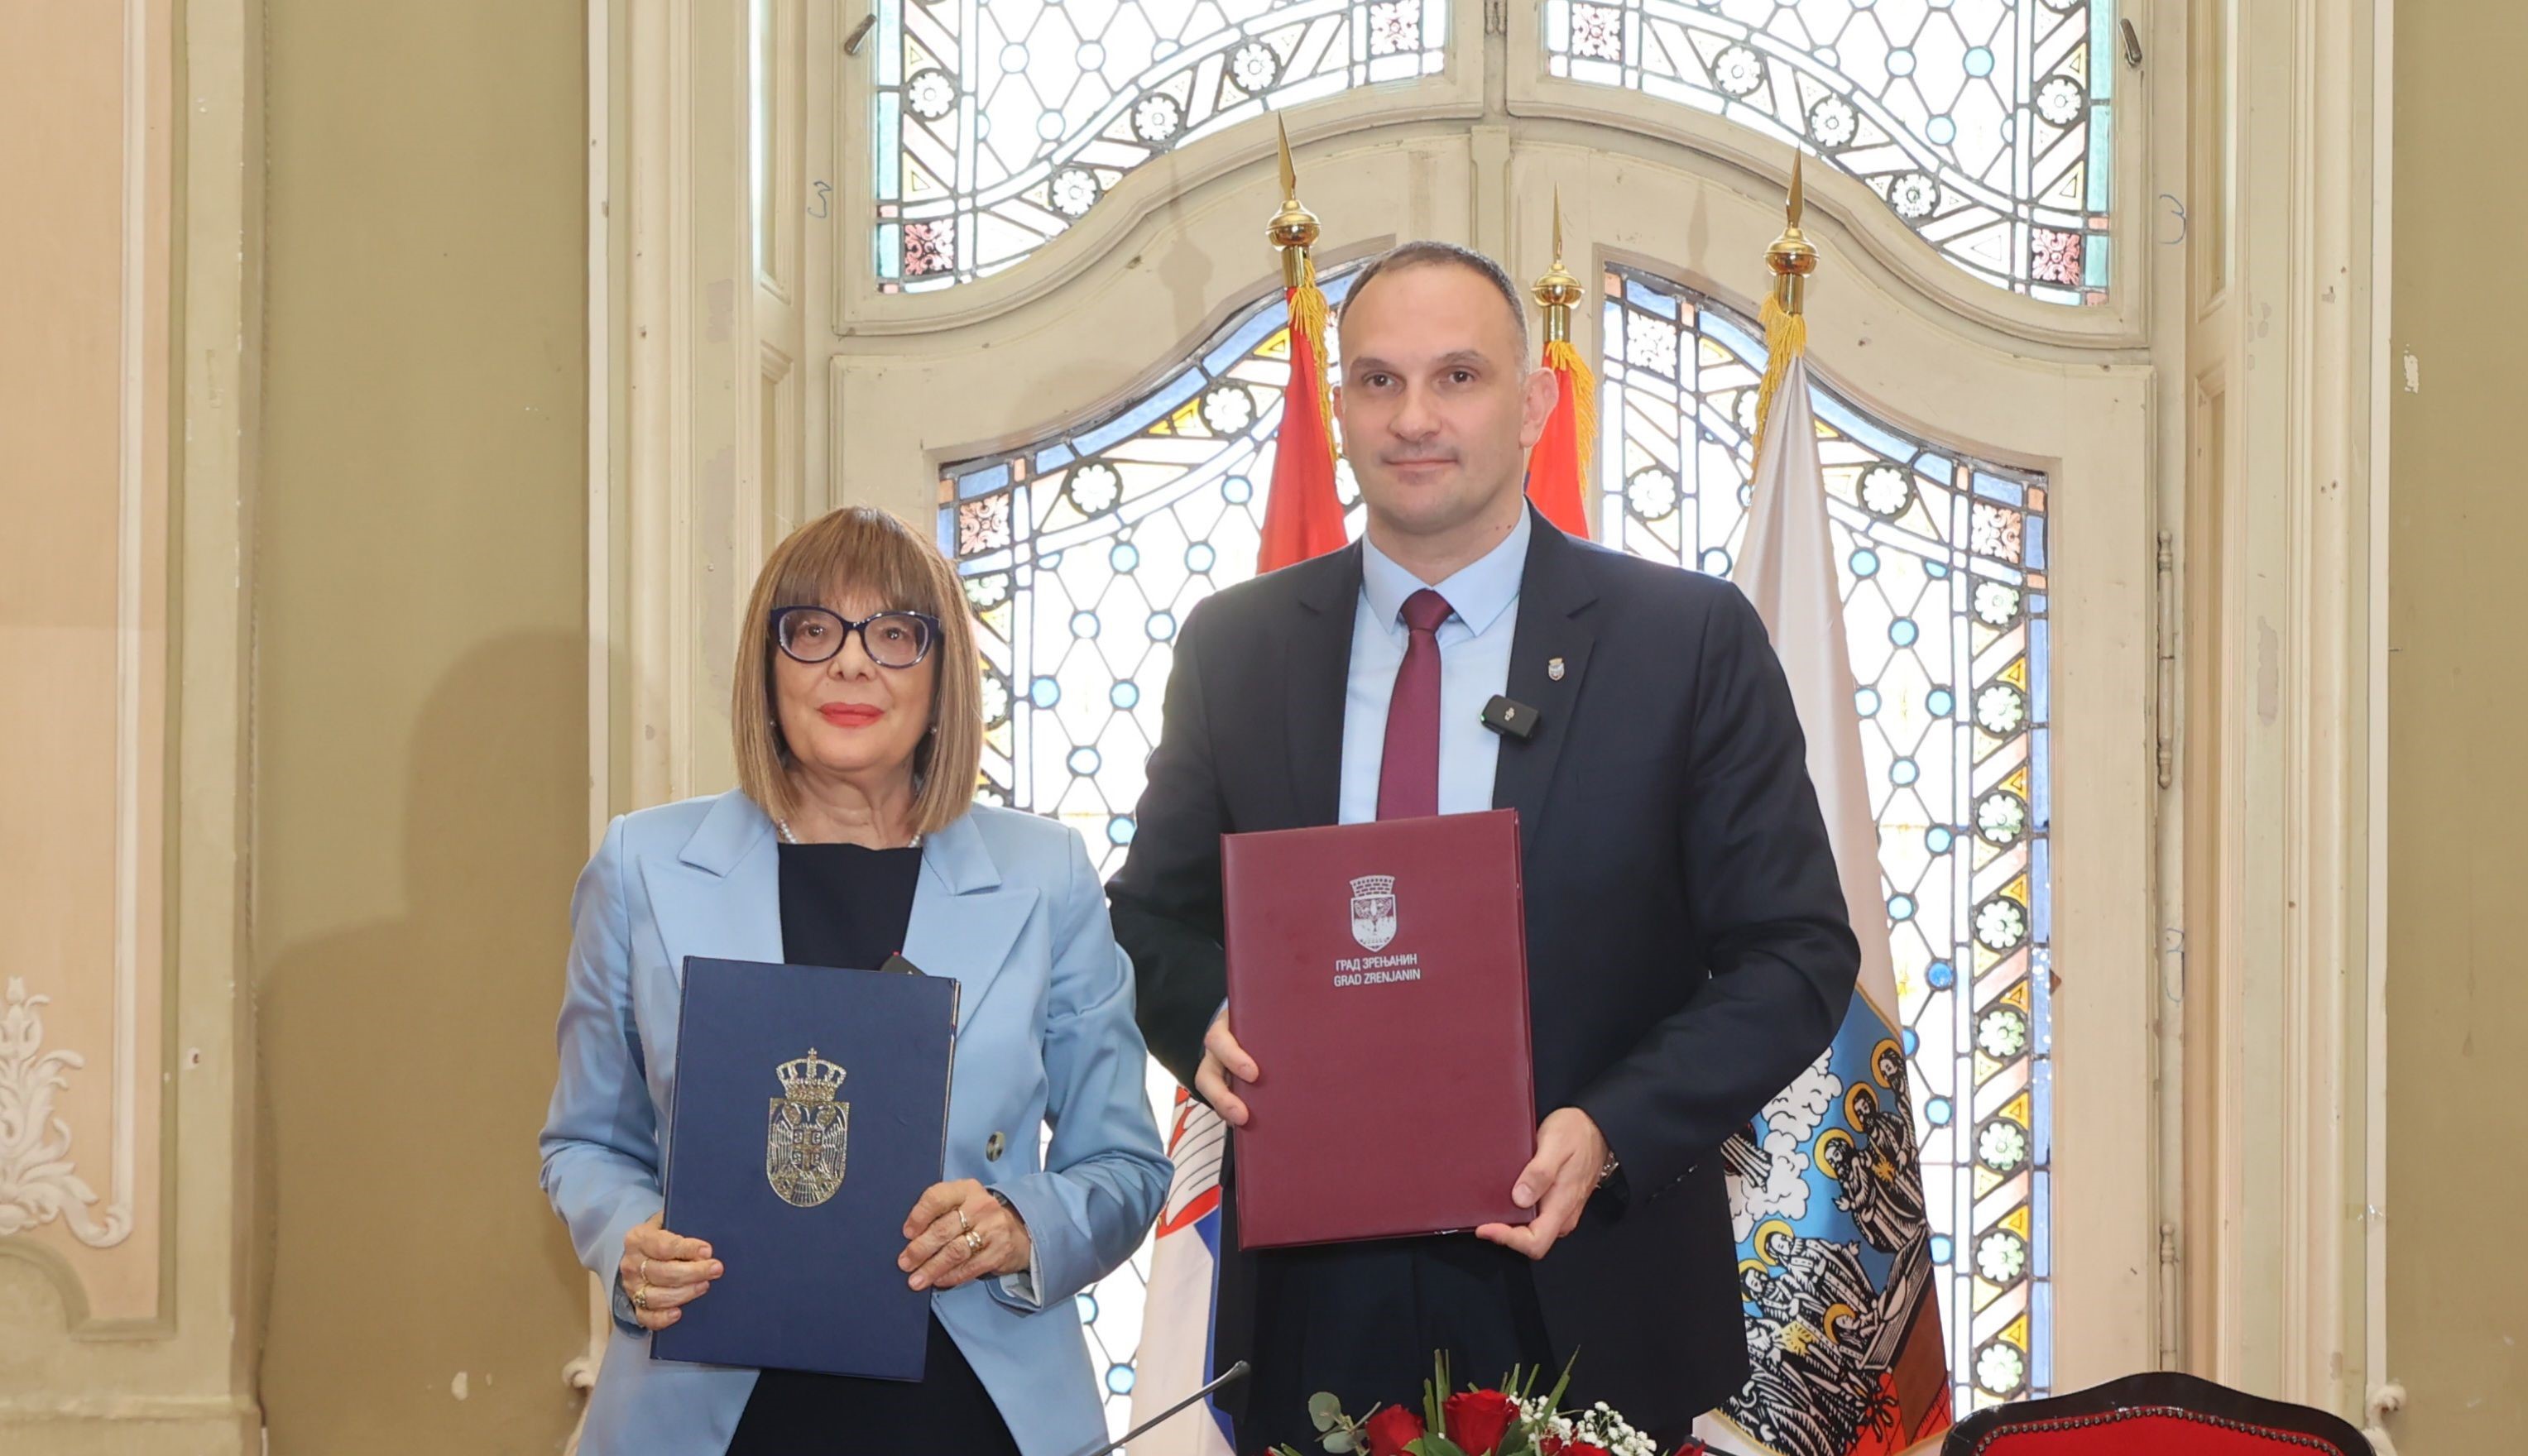 Потписан Уговор за пpојекат Зрењанин – Престоница културе Србије 2025. године